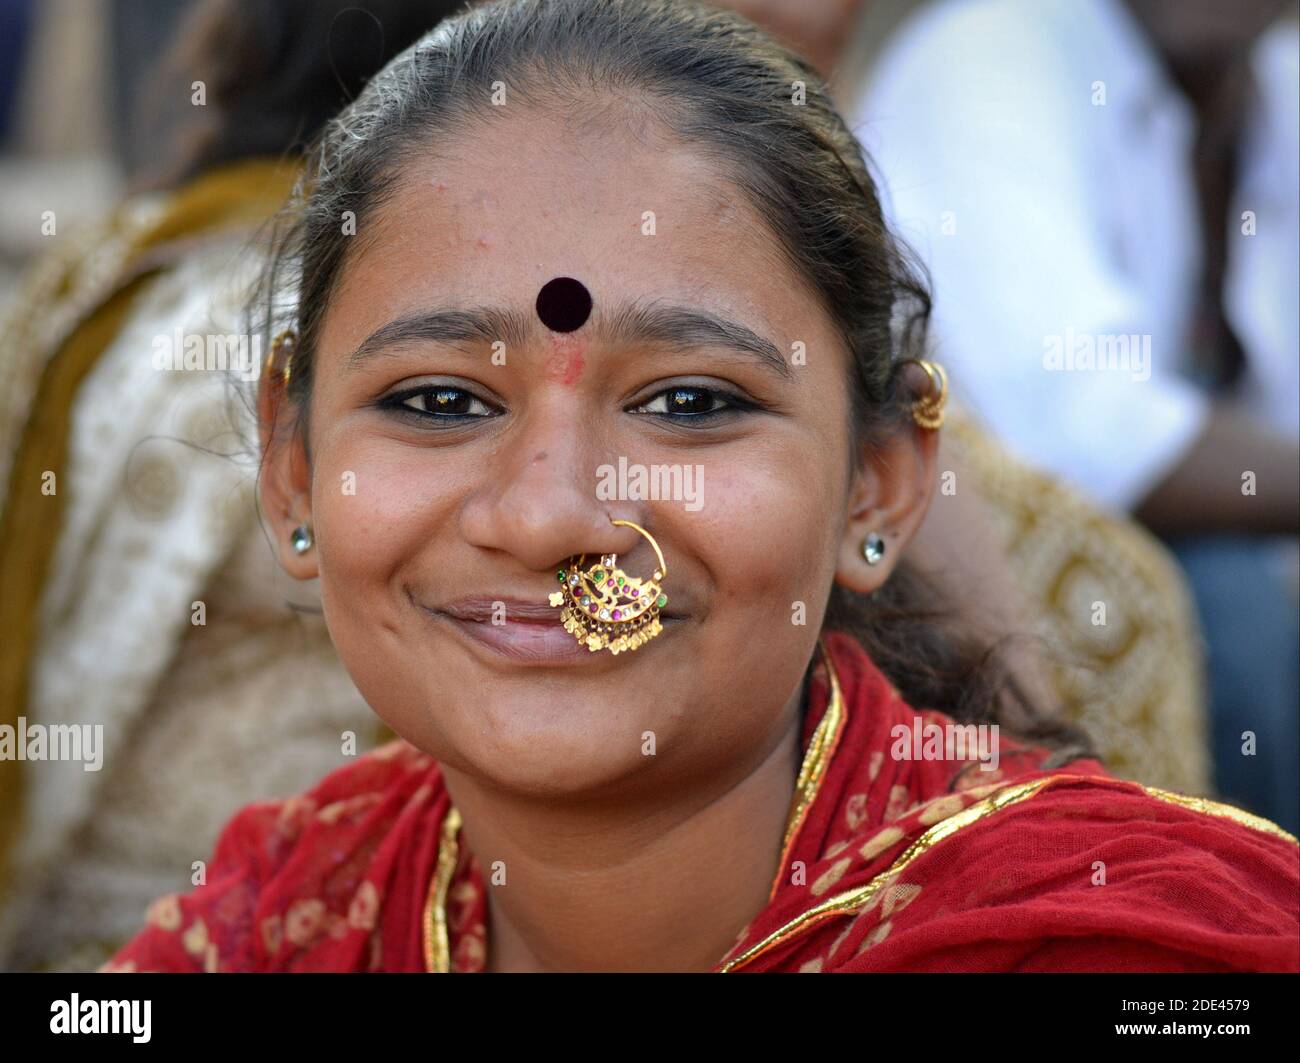 Junge schöne positive indische Gujarati Frau mit großen aufwendigen Goldnasenschmuck (Nasenring) und großen Bindi auf der Stirn lächelt an der Kamera. Stockfoto